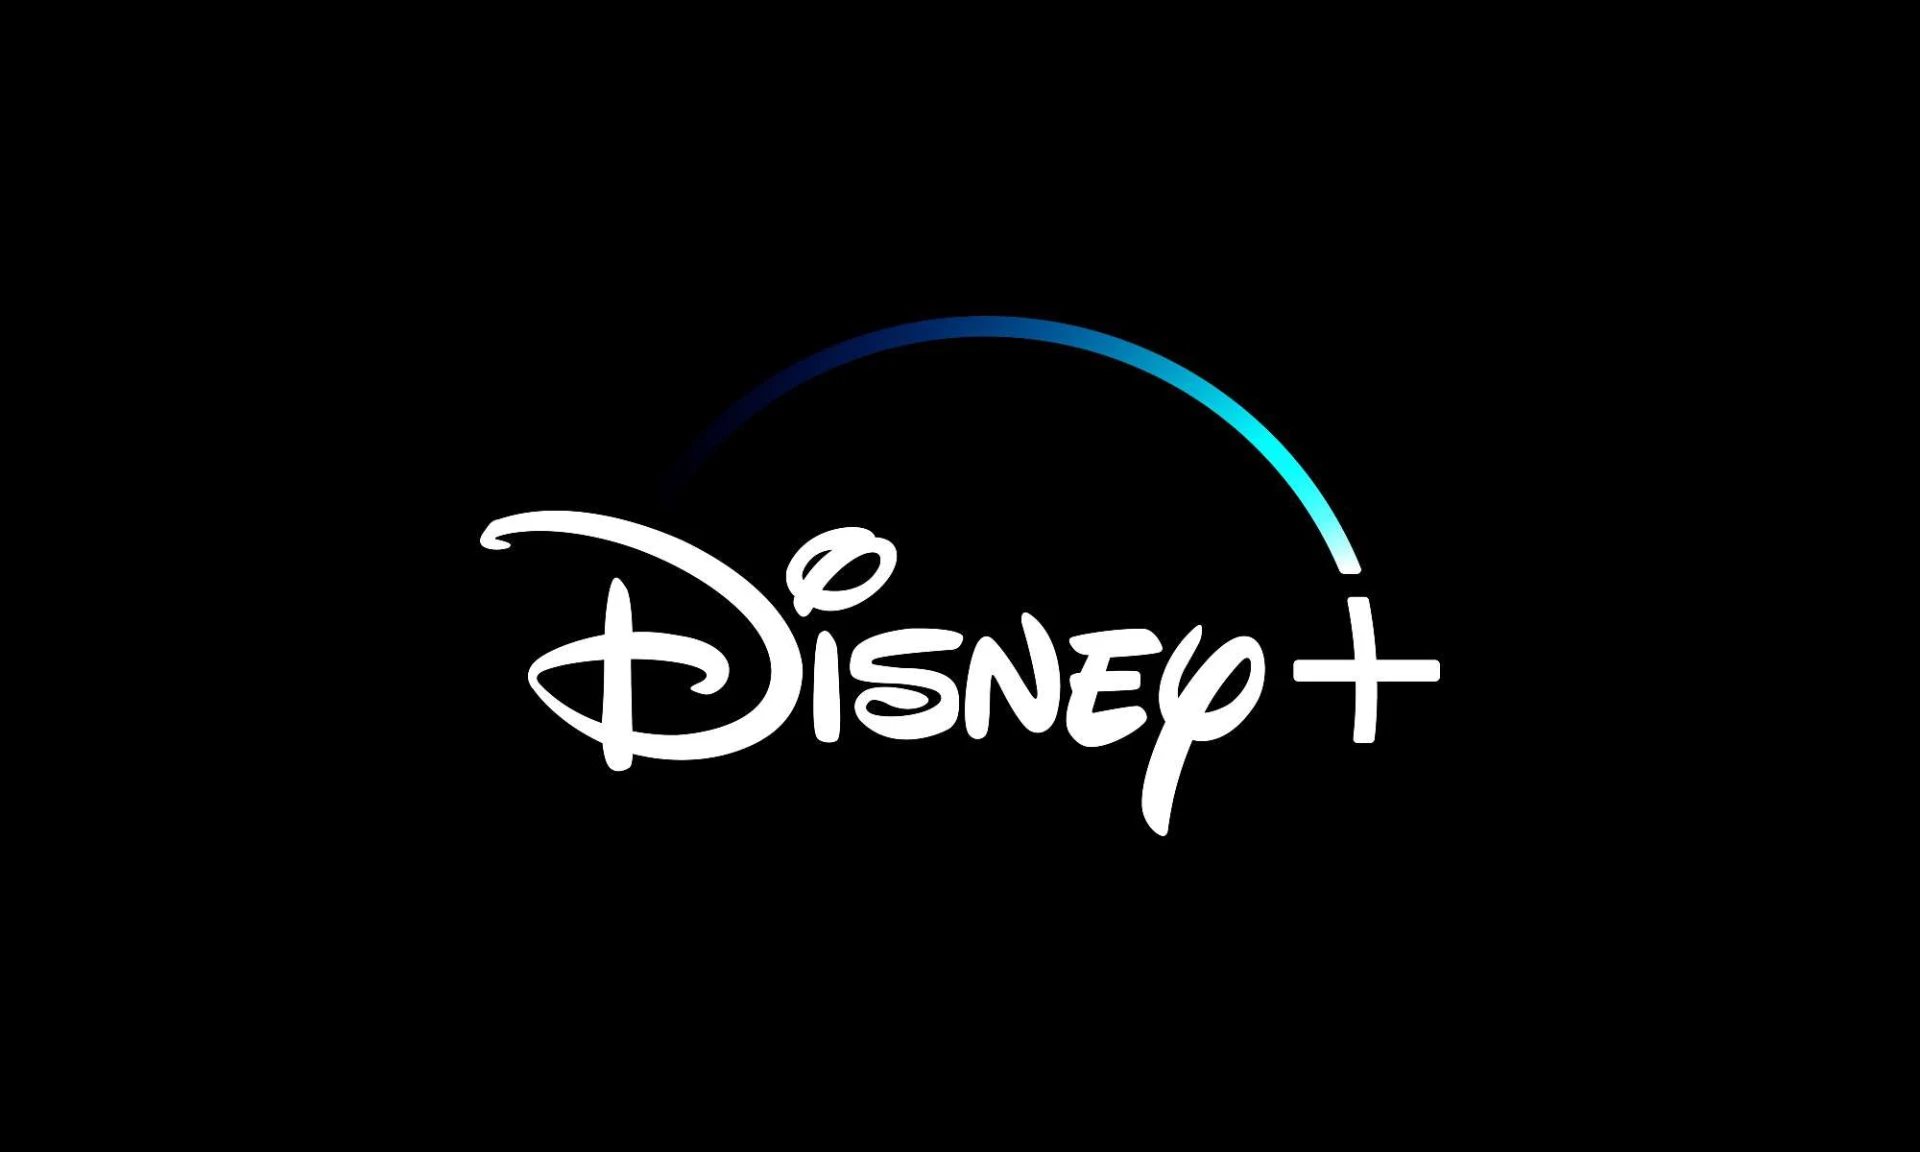 Disney+ Premium 4K Conta Full